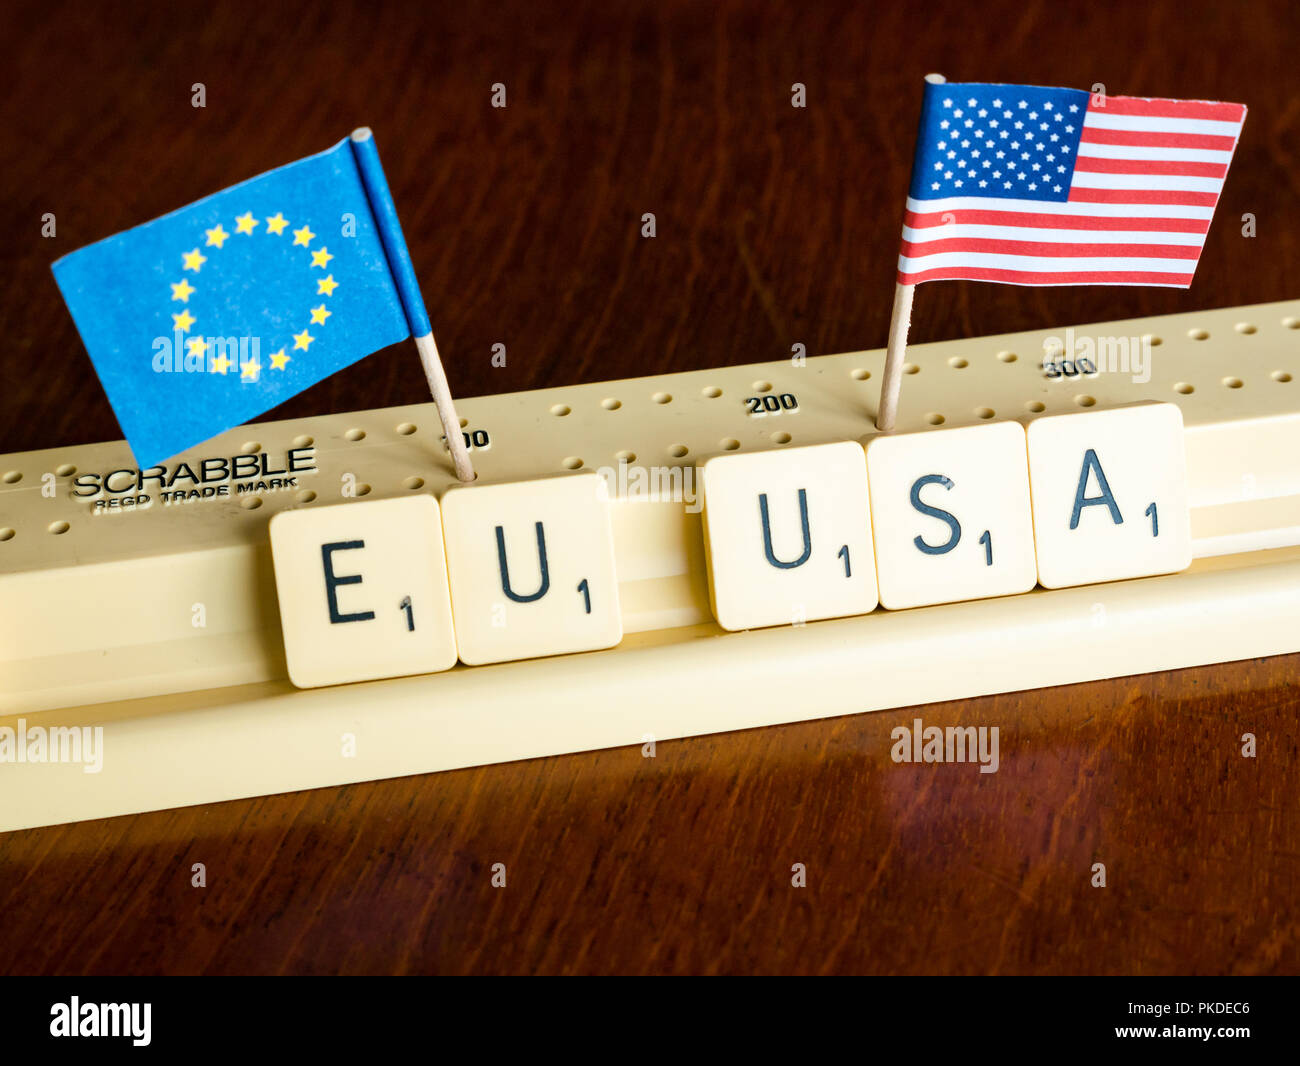 Scrabble Buchstaben Rechtschreibung EU und USA mit Amerikanischen und Europäischen Union Flaggen auf Mahagoni Hintergrund Nation, Handel und Verhandlung Konzept zu veranschaulichen Stockfoto